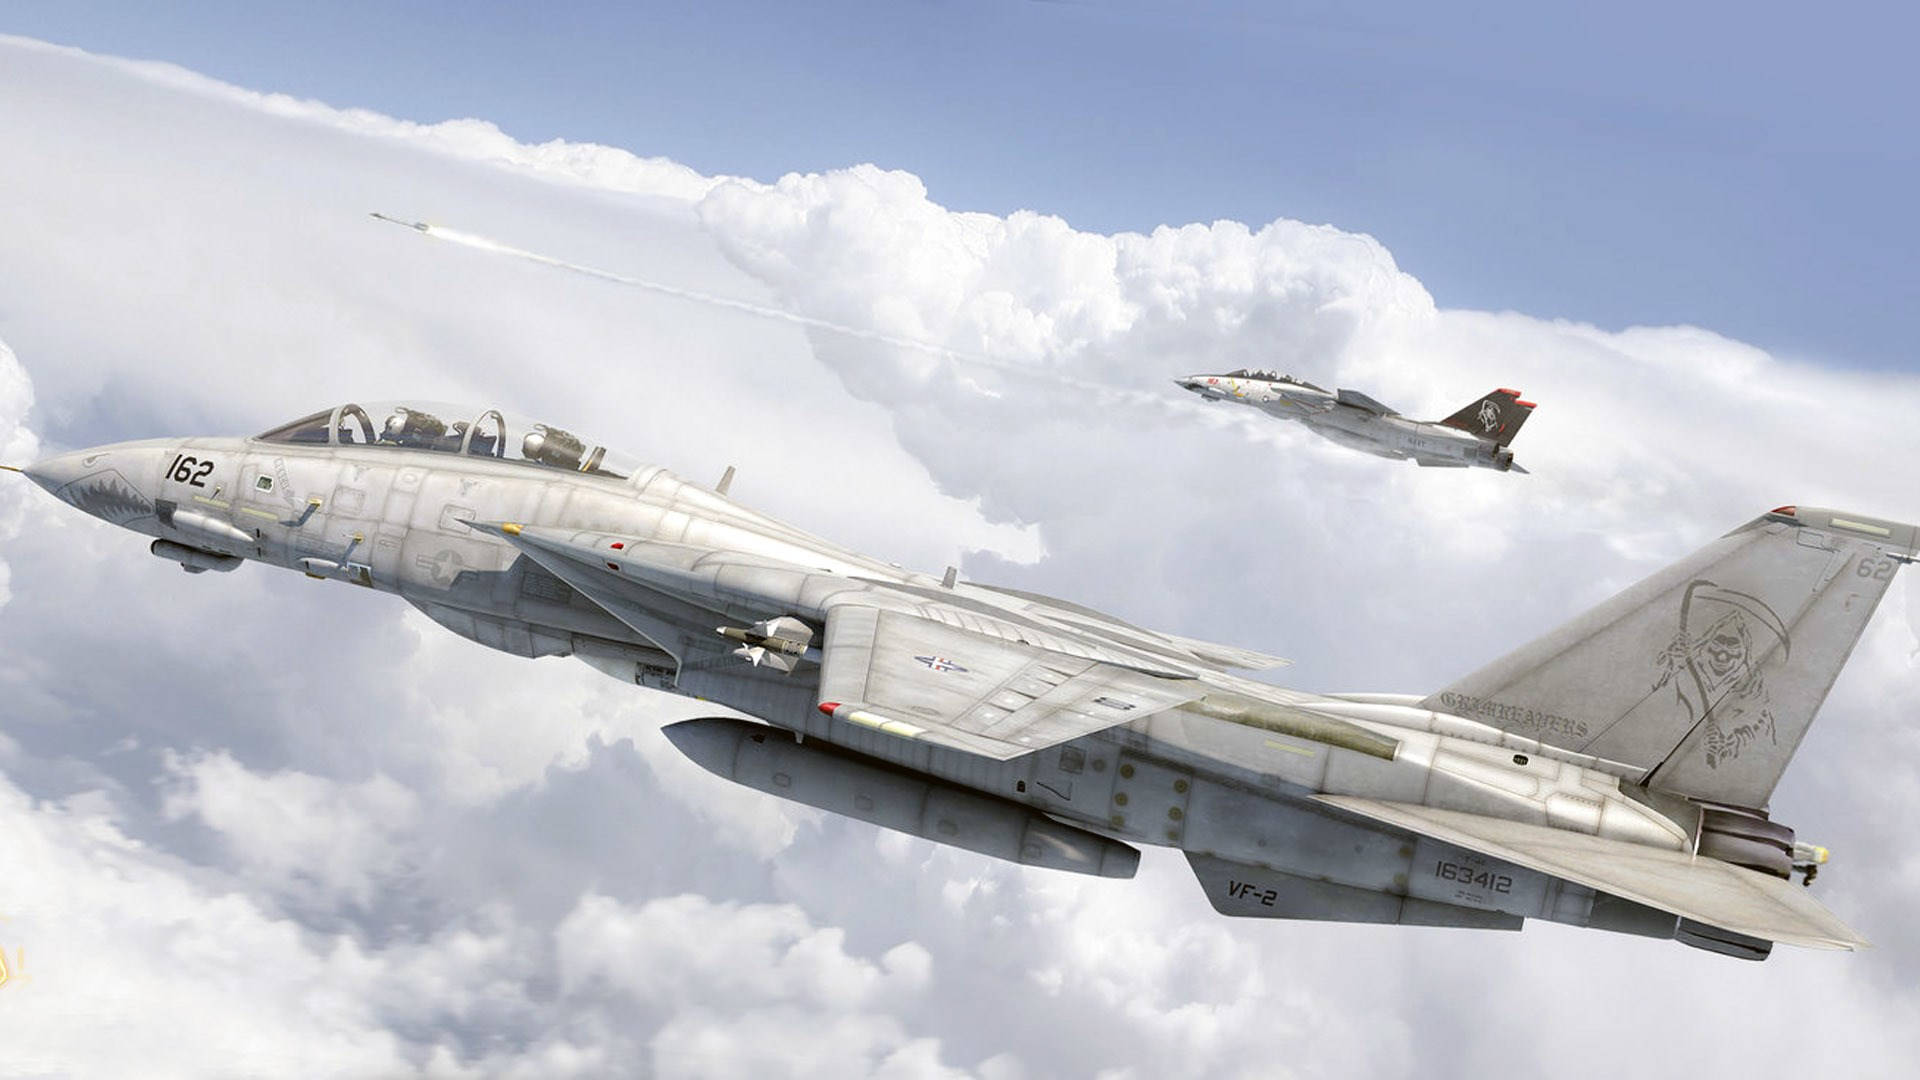 Et luftfoto af en ultra-hurtig jet mod en baggrund af skylende skyer. Wallpaper